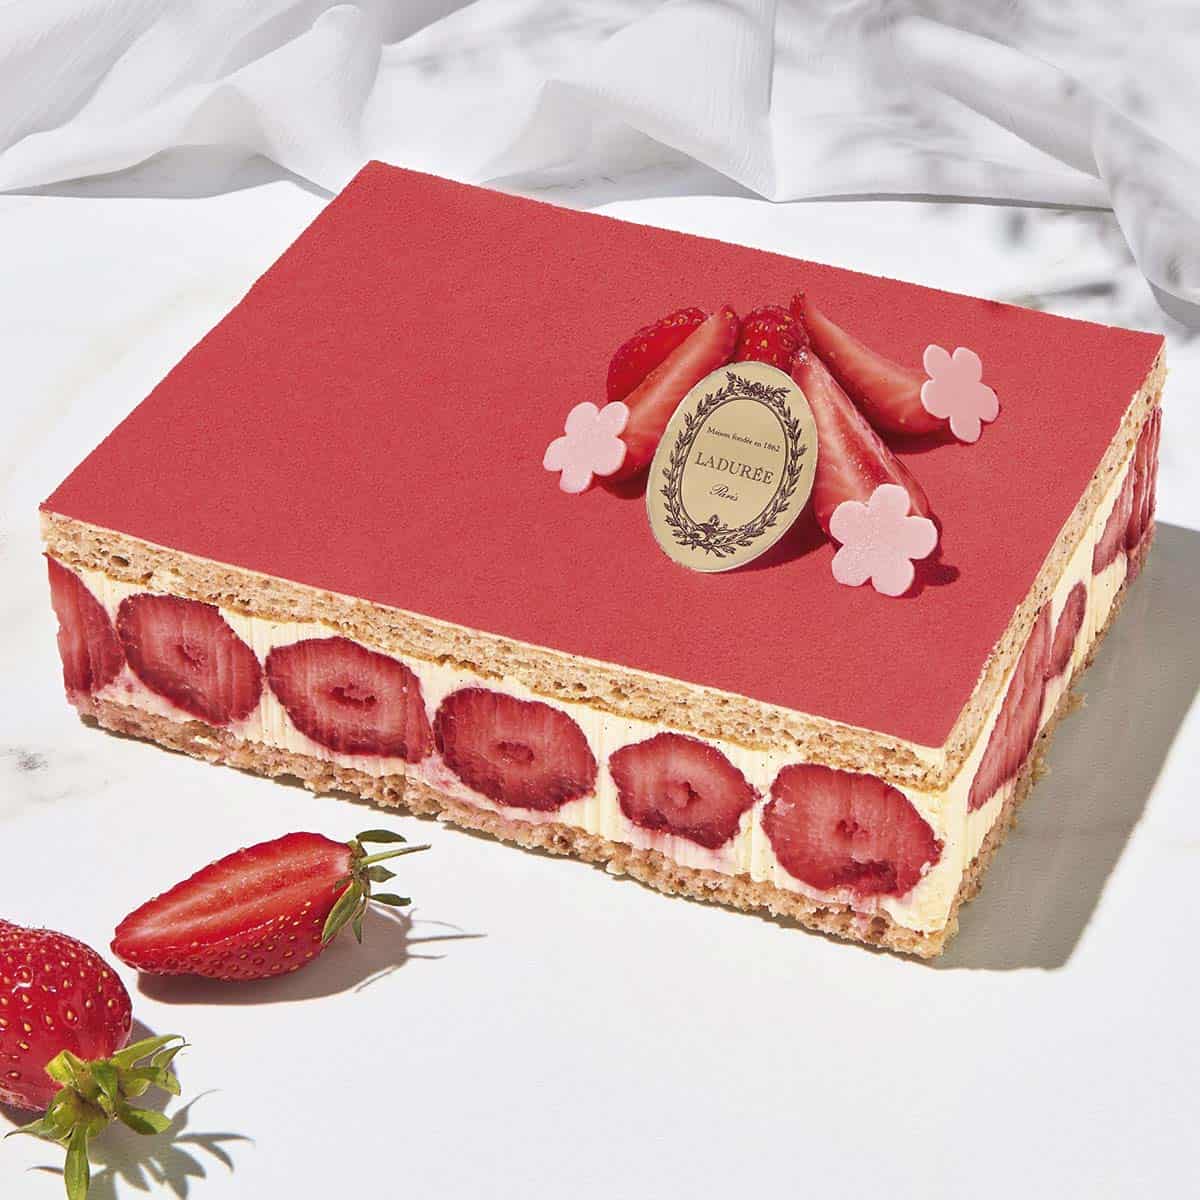 Ladure fraisier cake